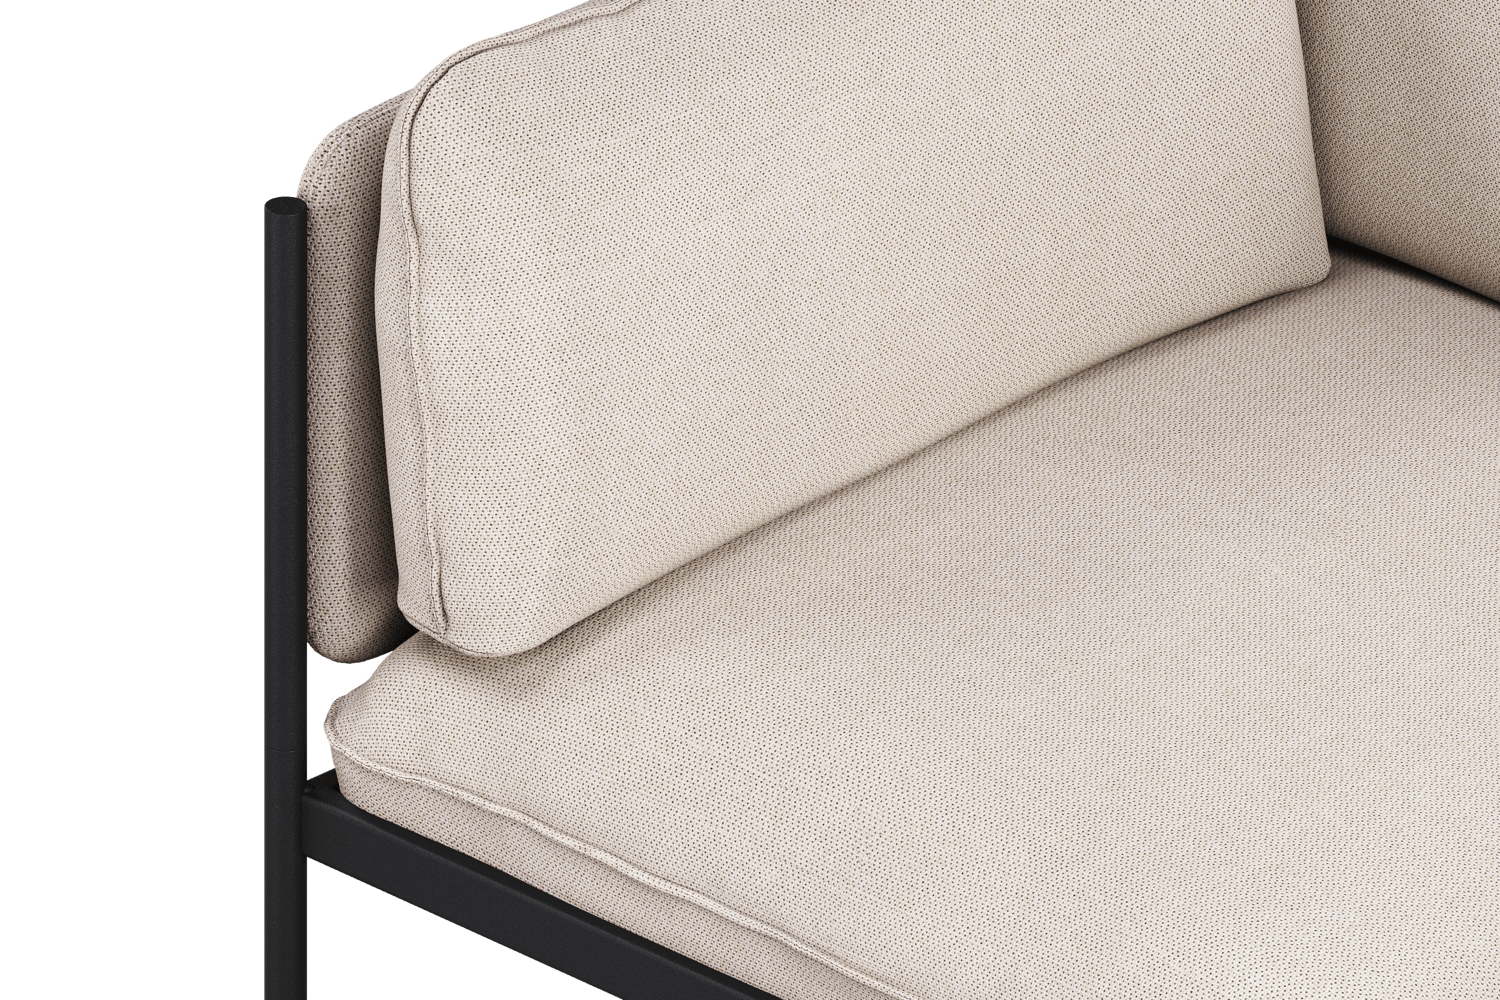 Toom Modular Sofa 4-Sitzer Konfiguration 1b in Oatmilk Beige  präsentiert im Onlineshop von KAQTU Design AG. Ecksofa links ist von Noo.ma